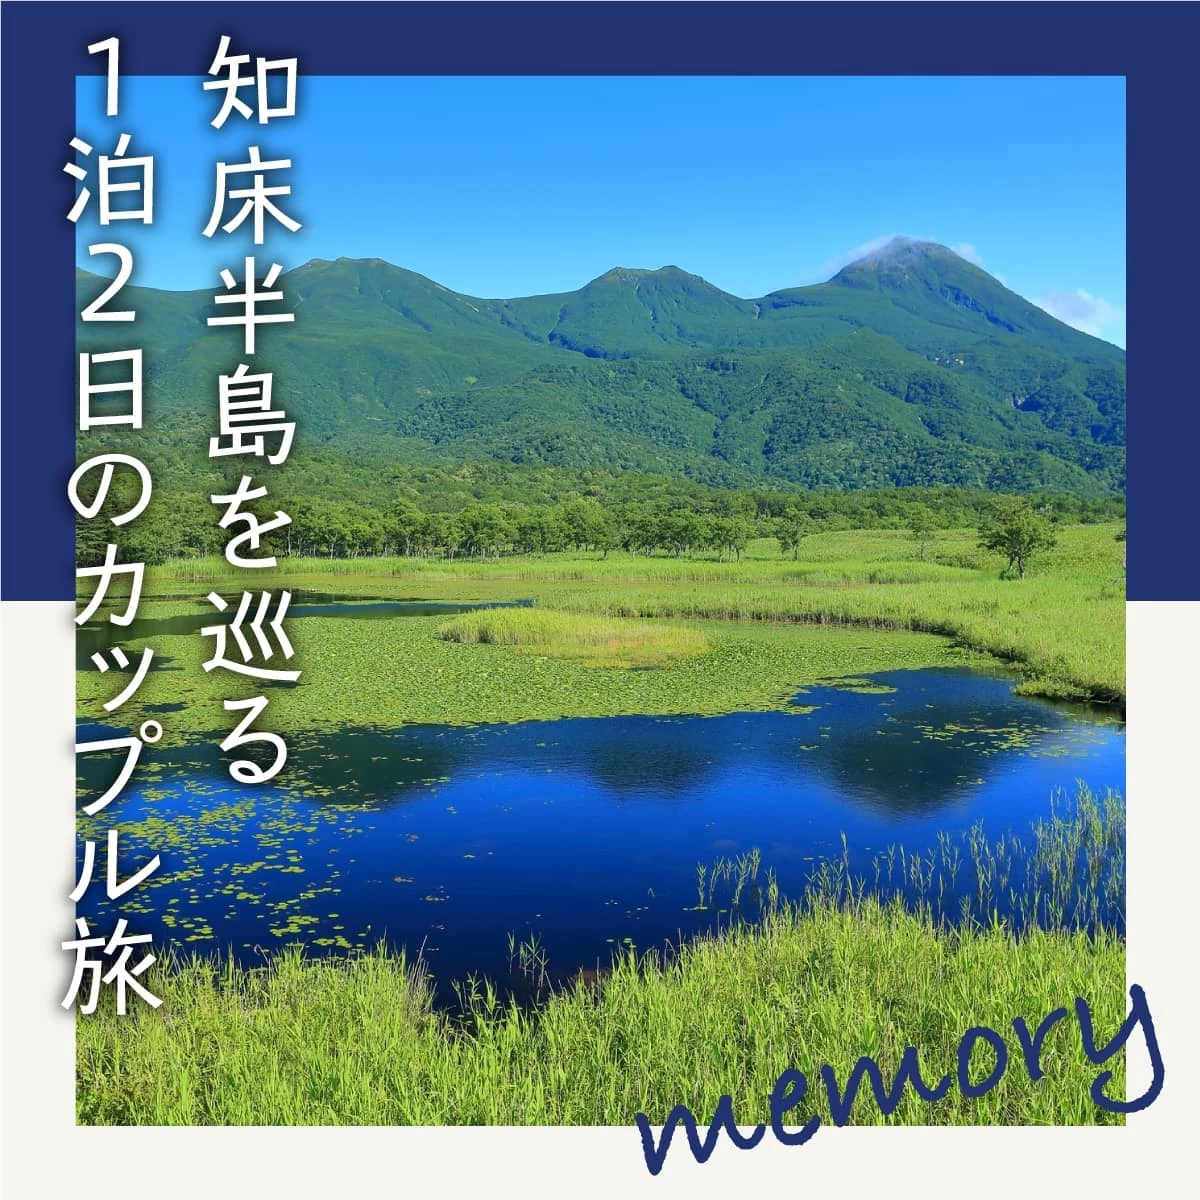 北海道・ウトロ温泉を1泊2日で観光。世界遺産・知床を巡る旅